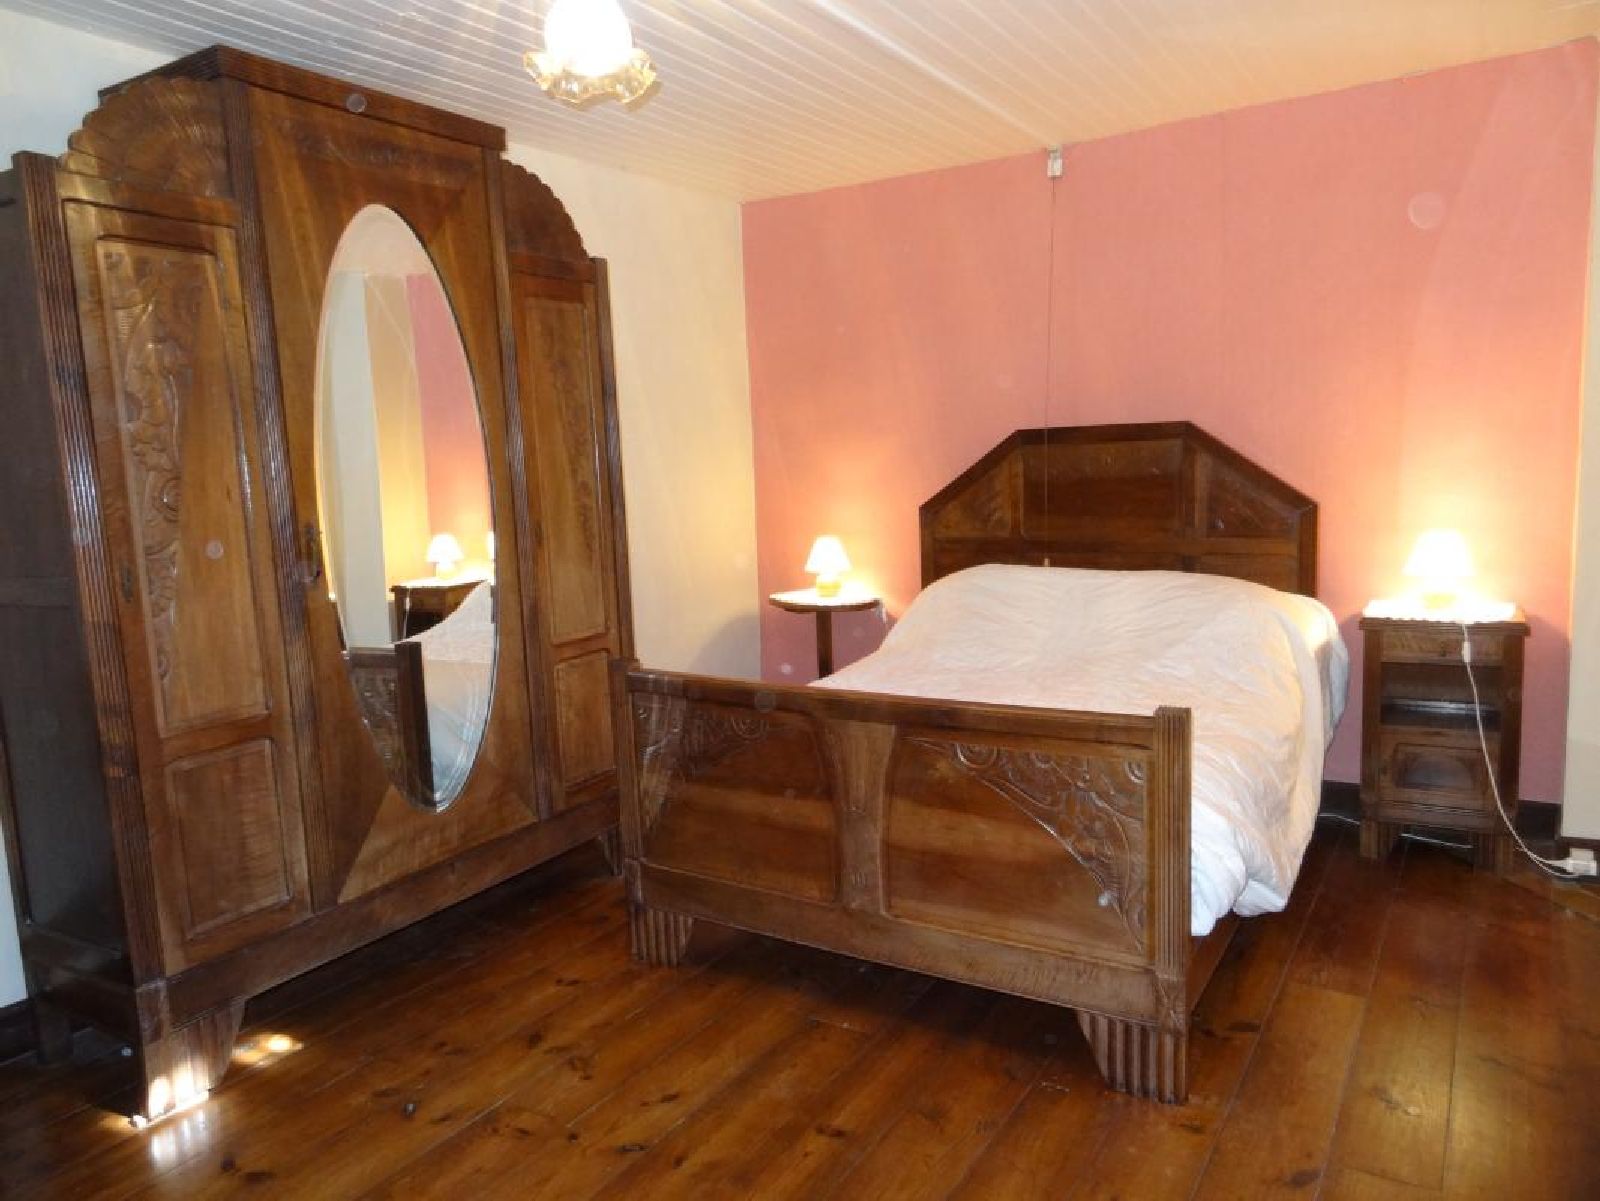 Appartement Idiart chambre lit double bois - Lasse 